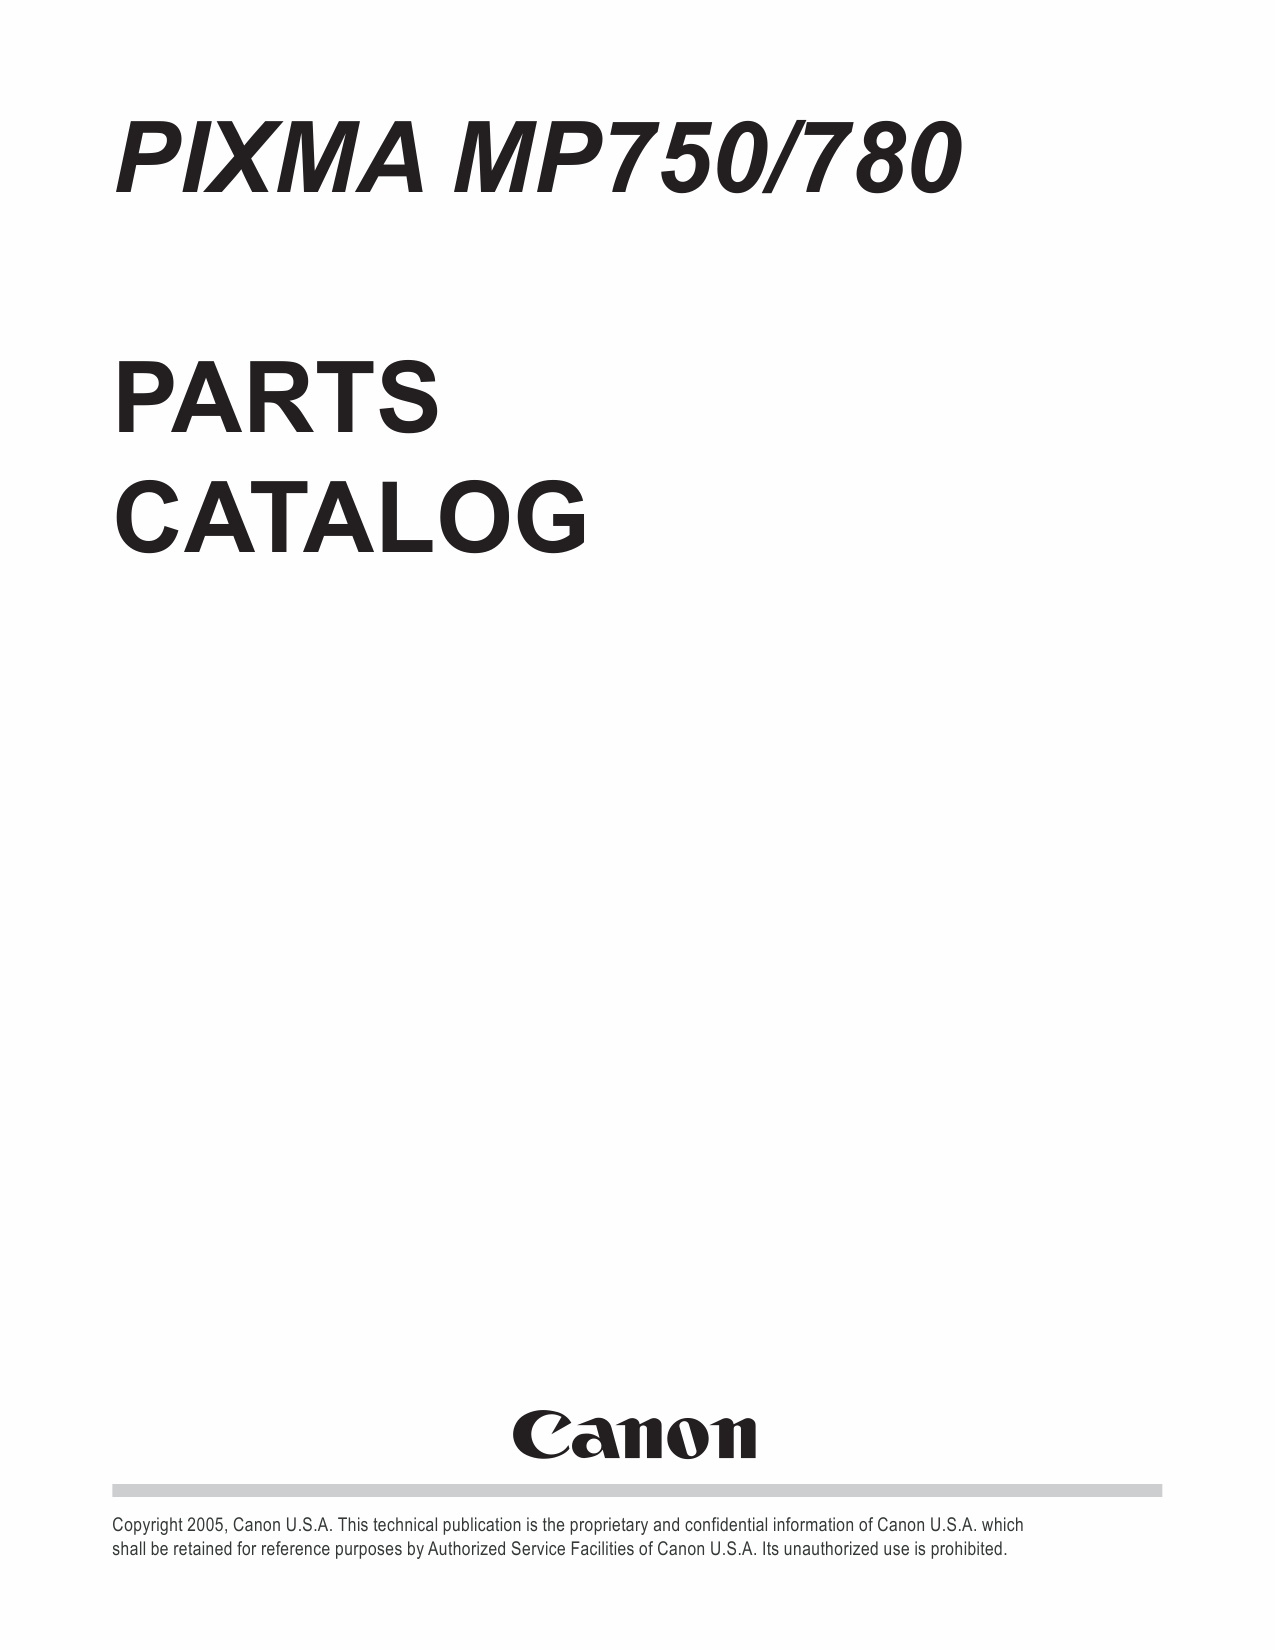 Canon PIXMA MP750 MP780 Part Catalog-1